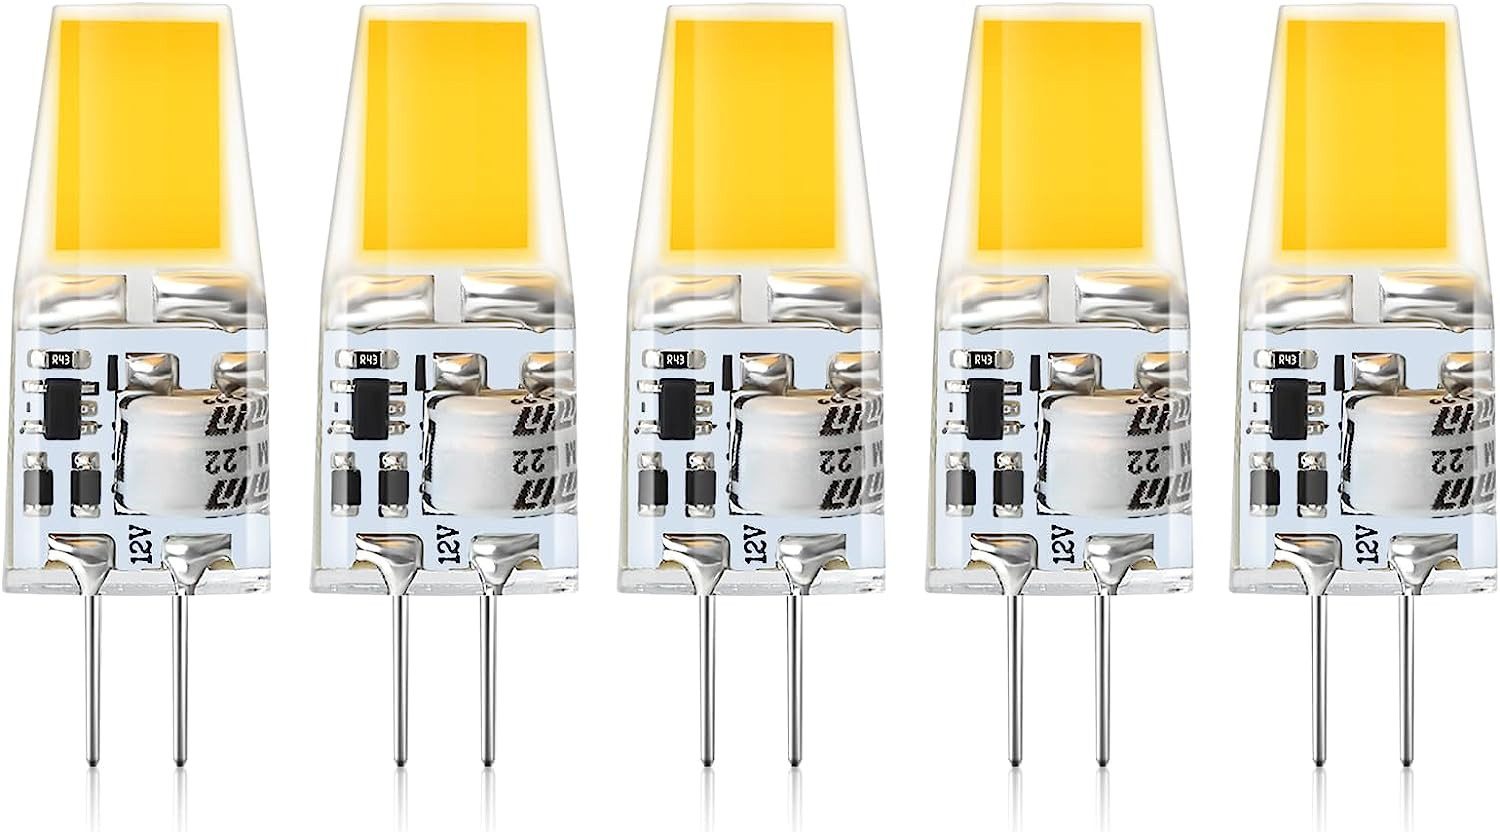 Novzep LED-Leuchtmittel 5er-Pack G4LED Lampen,2W G4 LED Birnen 12V,Warmweiß 3000K, 240 LM, G4, 5 St.